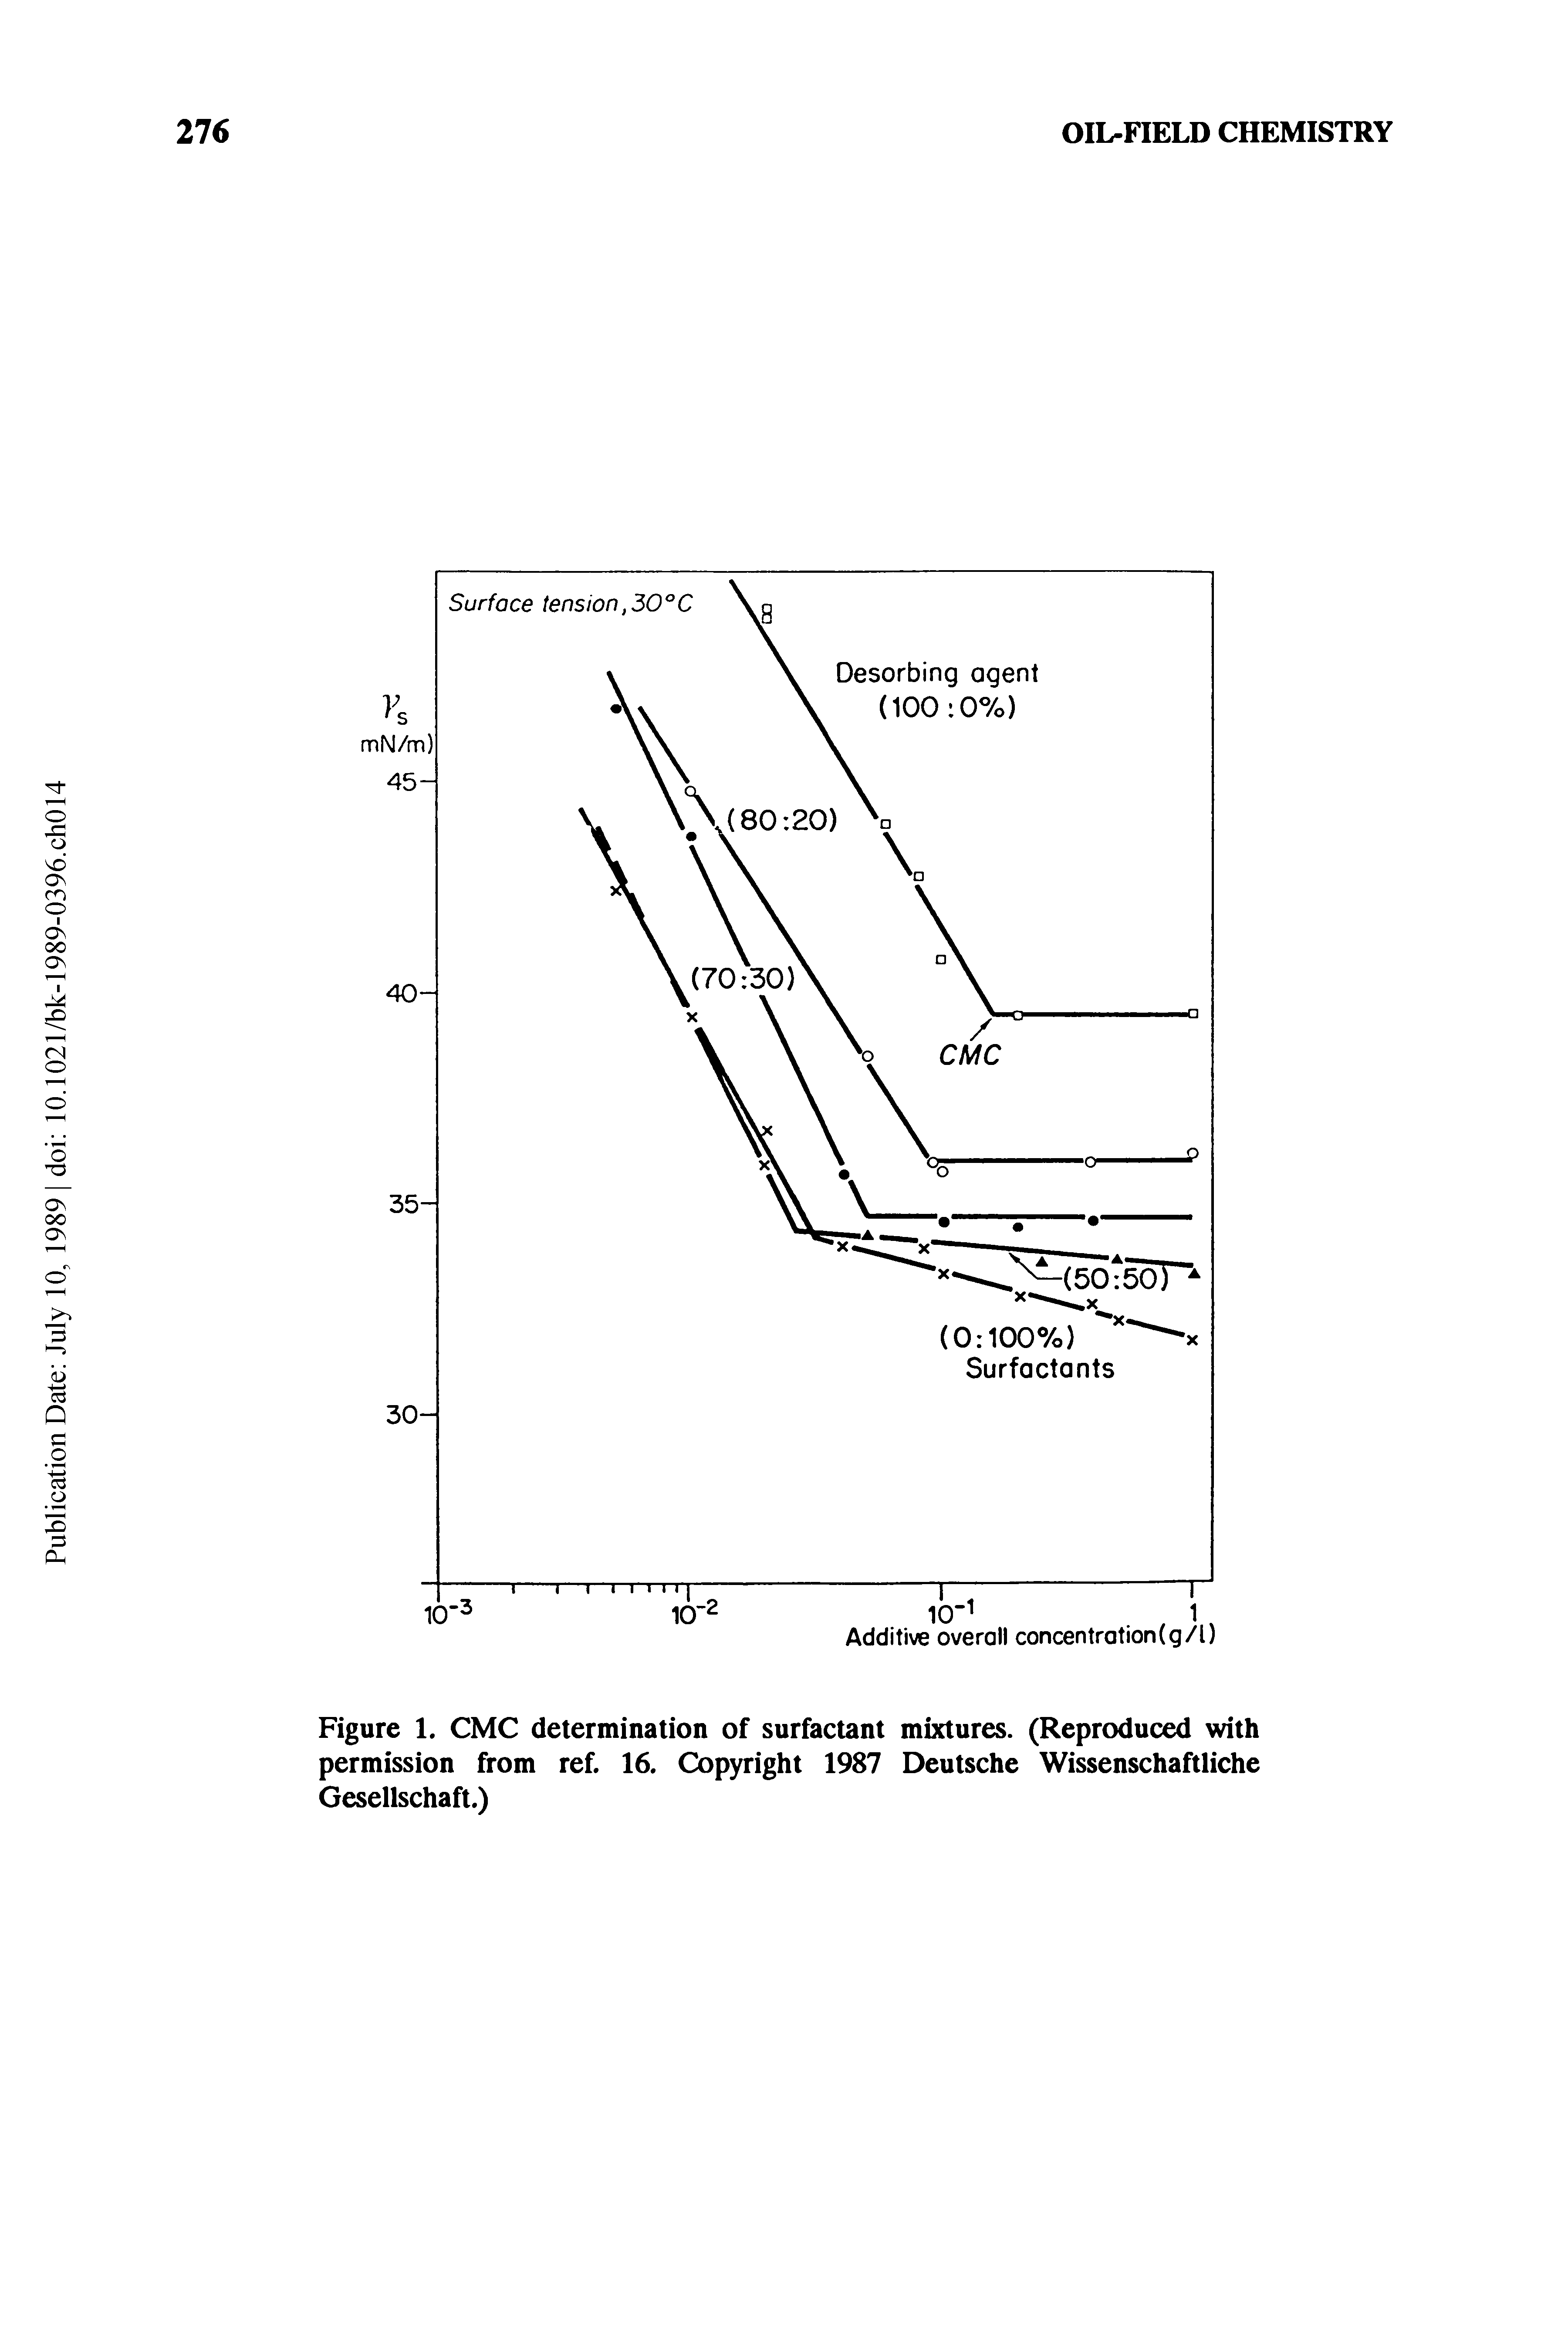 Figure 1. CMC determination of surfactant mixtures. (Reproduced with permission from ref. 16. Copyright 1987 Deutsche Wissenschaftliche Gesellschaft.)...